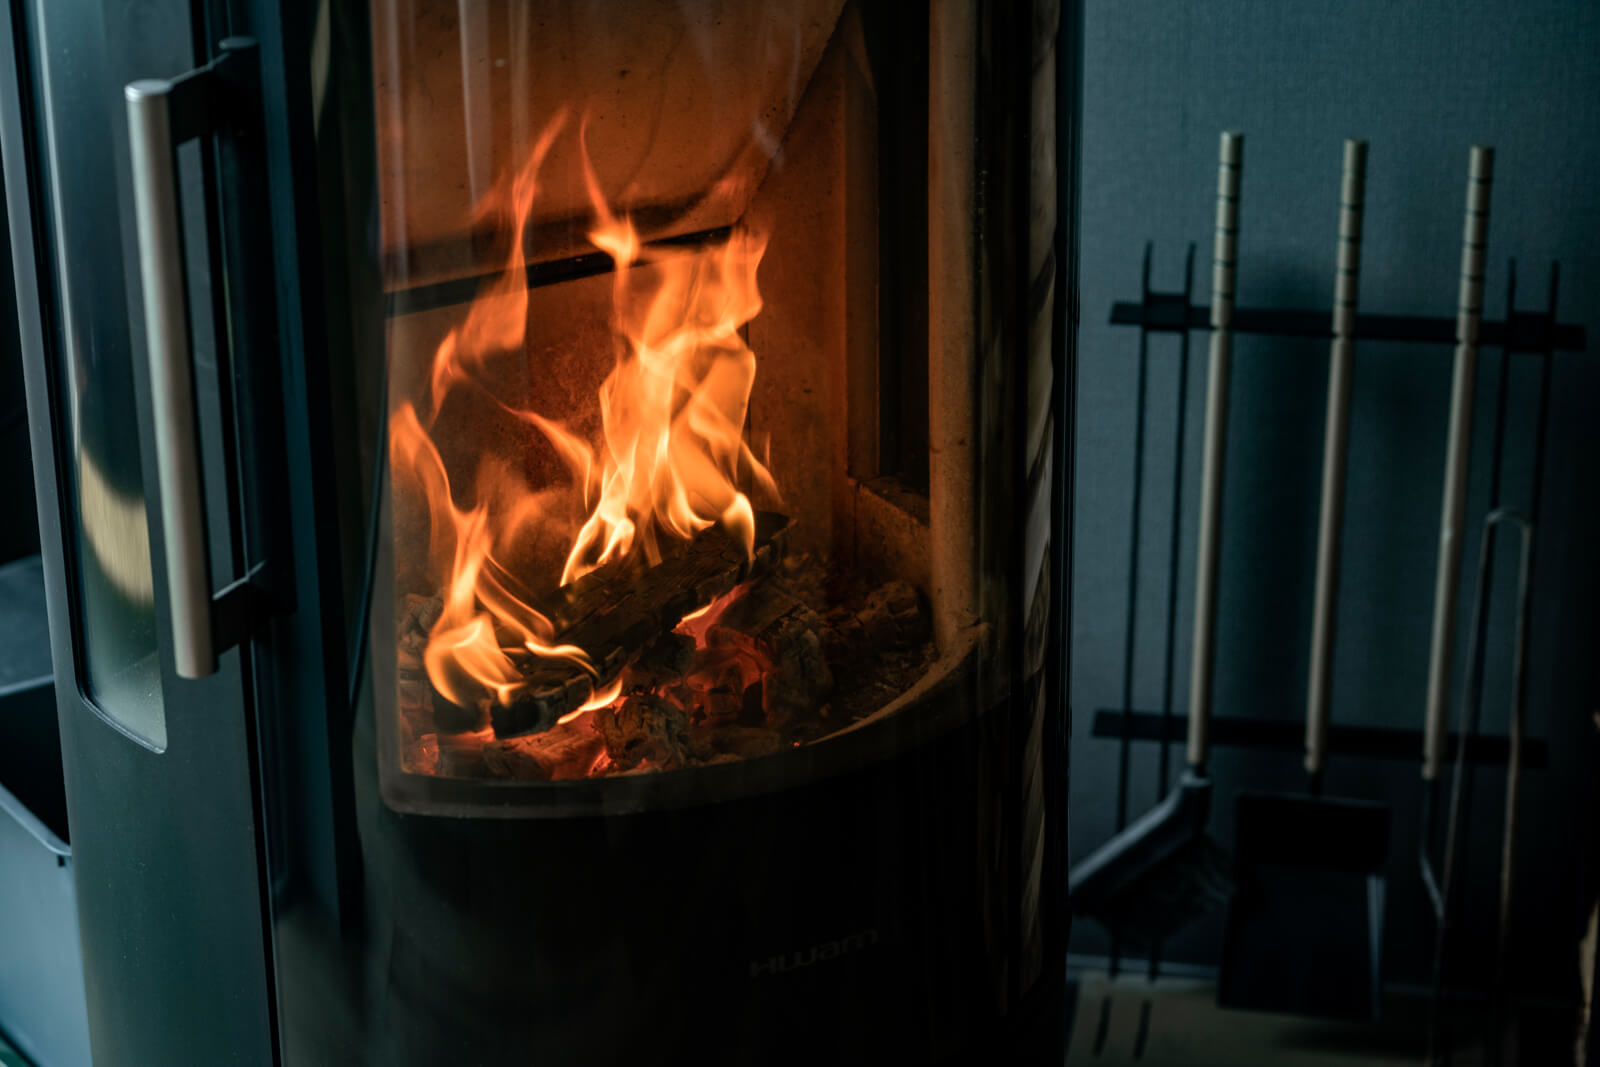 薪ストーブは炎が見えることで、視覚的な暖かさも感じられる